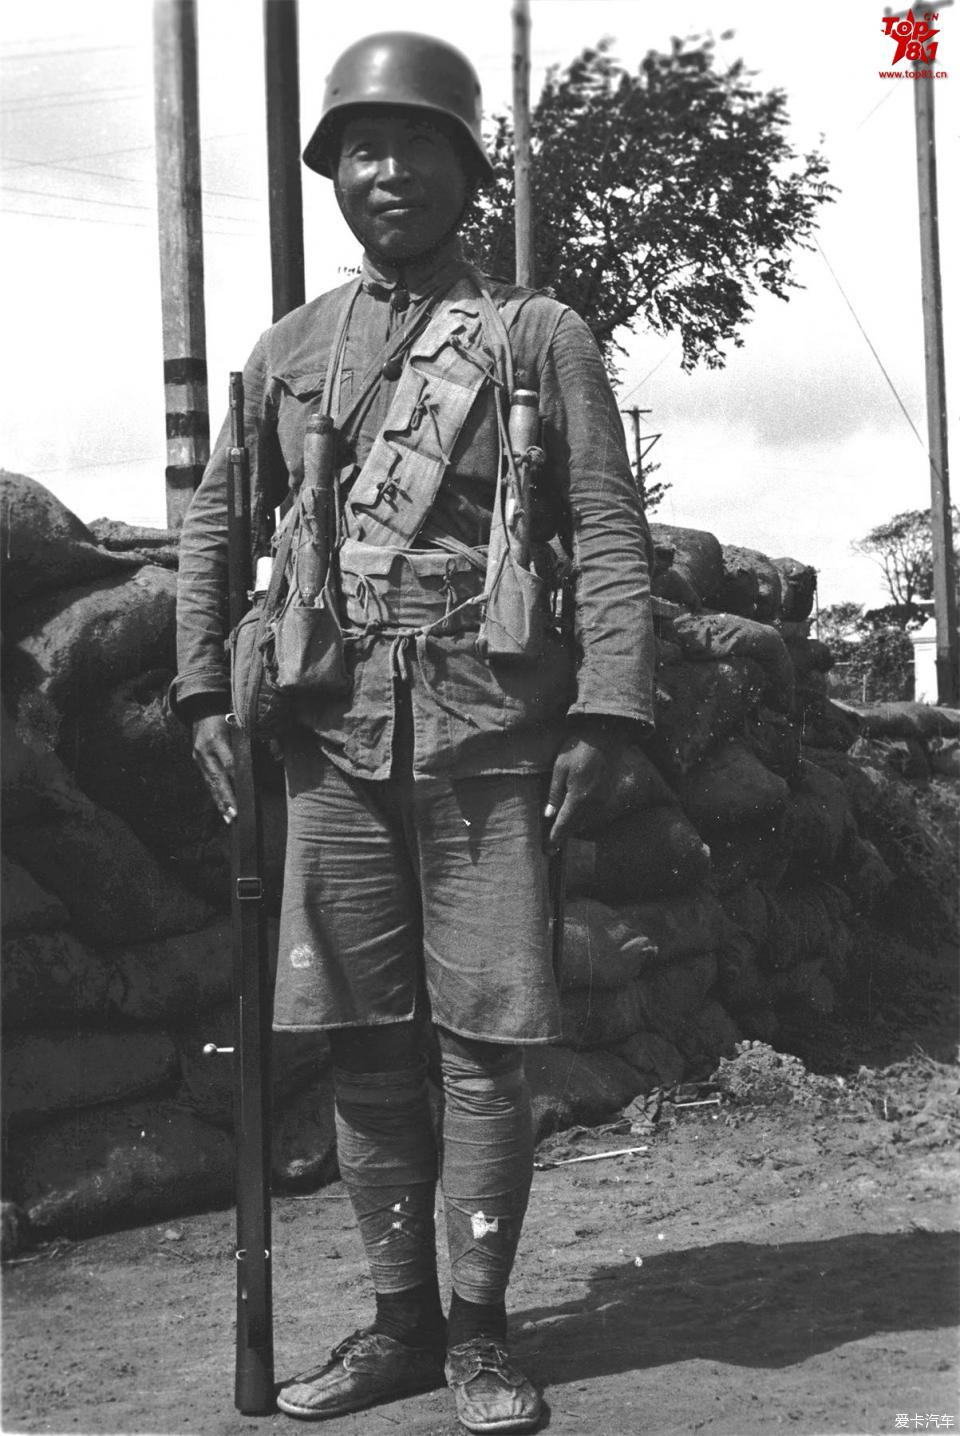 【图】老照片:守卫上海阵地作战的国军士兵,1937年